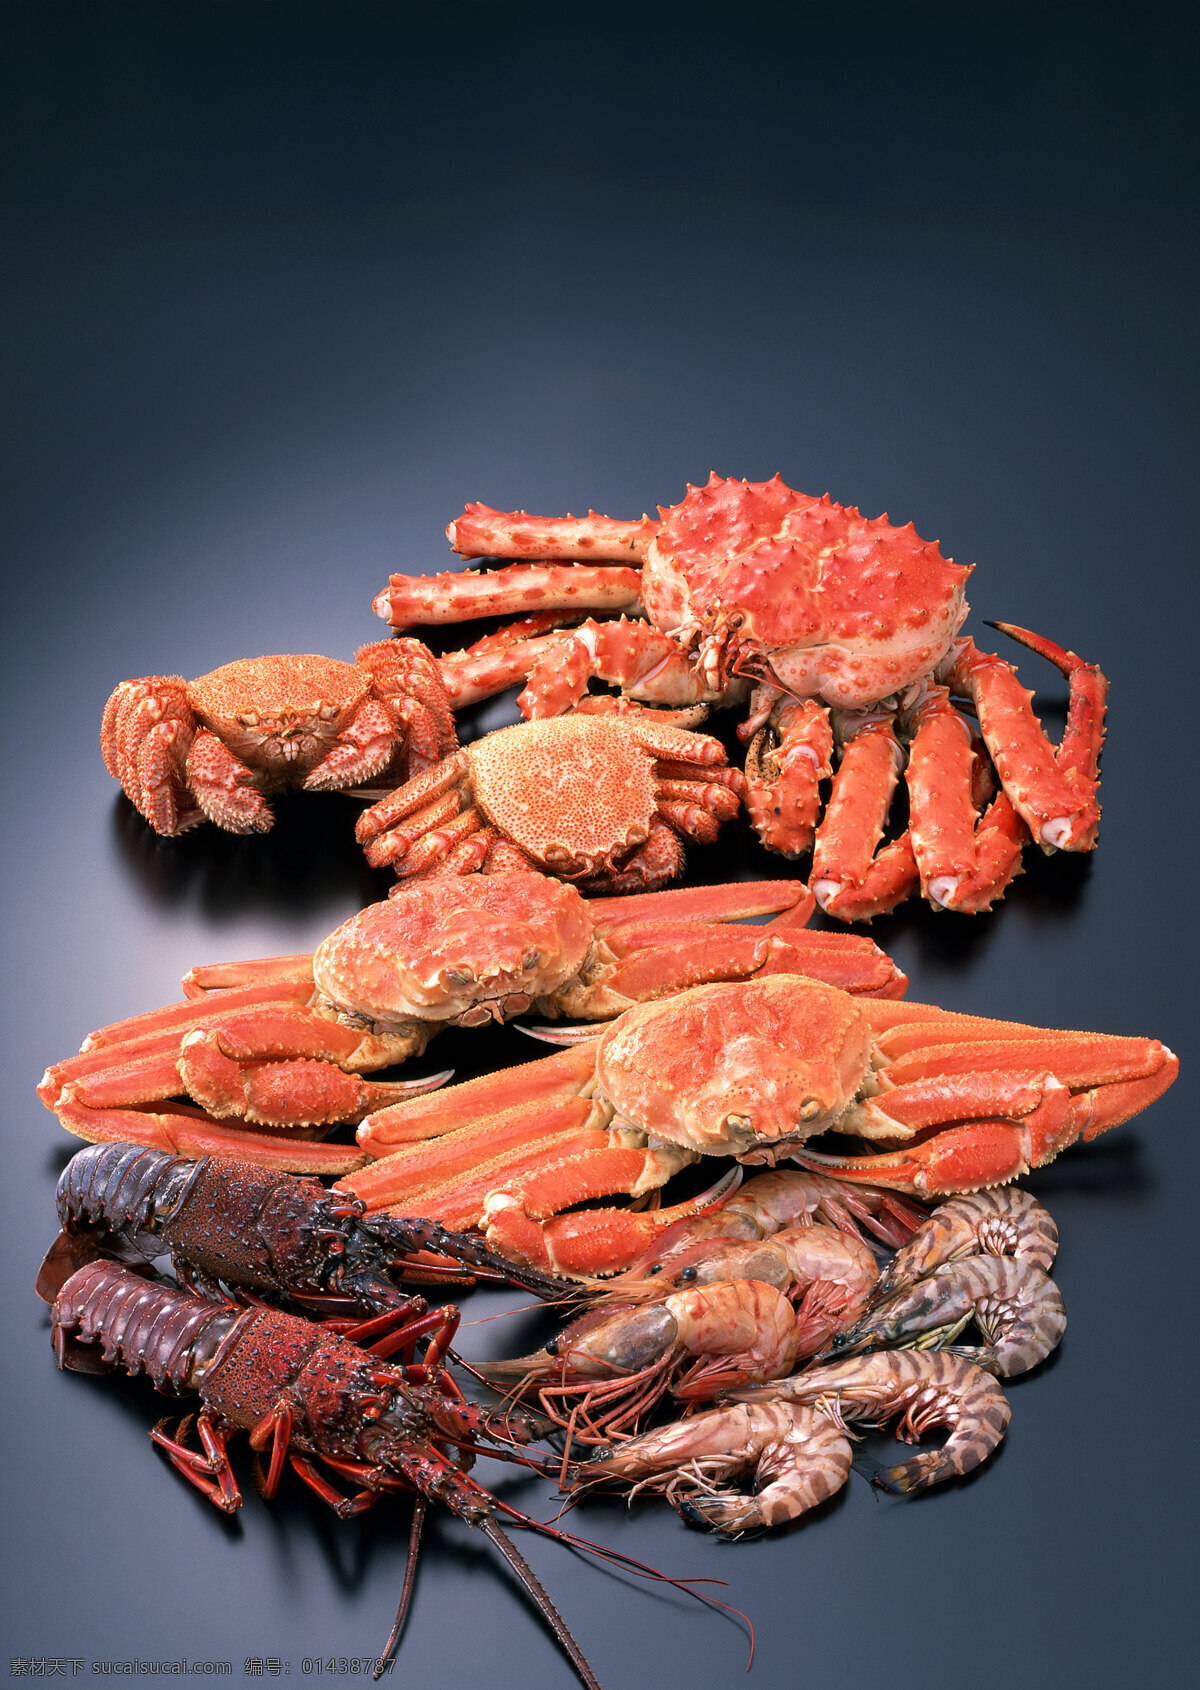 海鲜大全 虾 蟹 贝壳 螺 龙虾 新鲜食物原料 海鲜 美味 餐饮美食 食物原料 摄影图库 海洋生物 生物世界